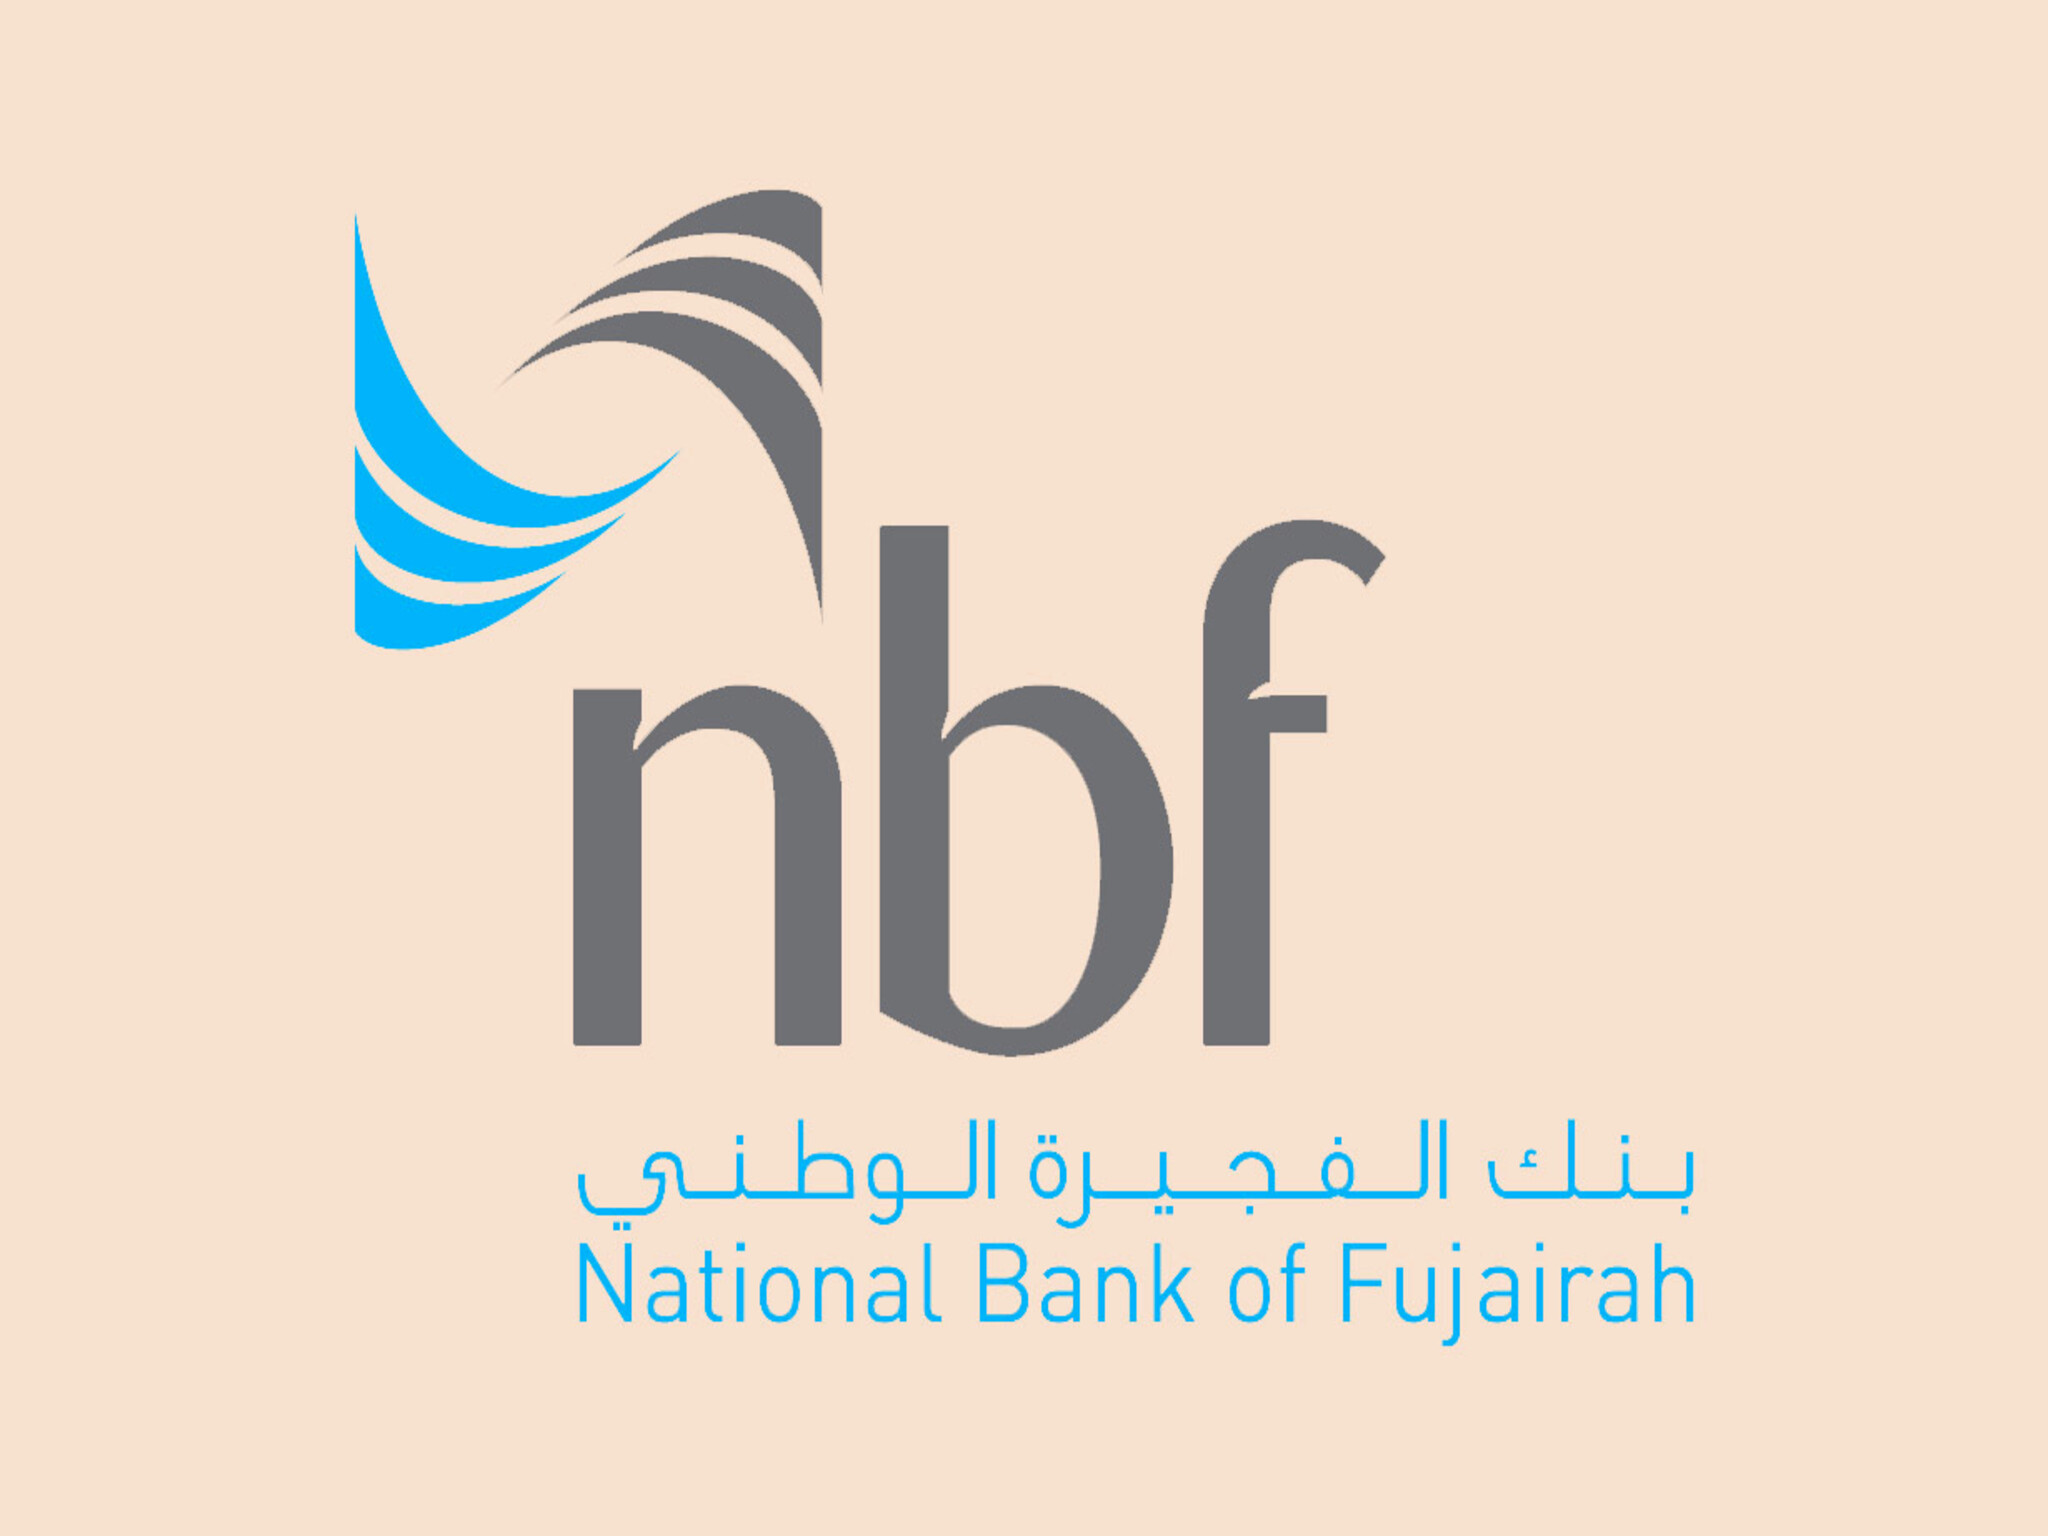 طريقة فتح حساب بنك الفجيرة الوطني في الإمارات... بــالخطوات 